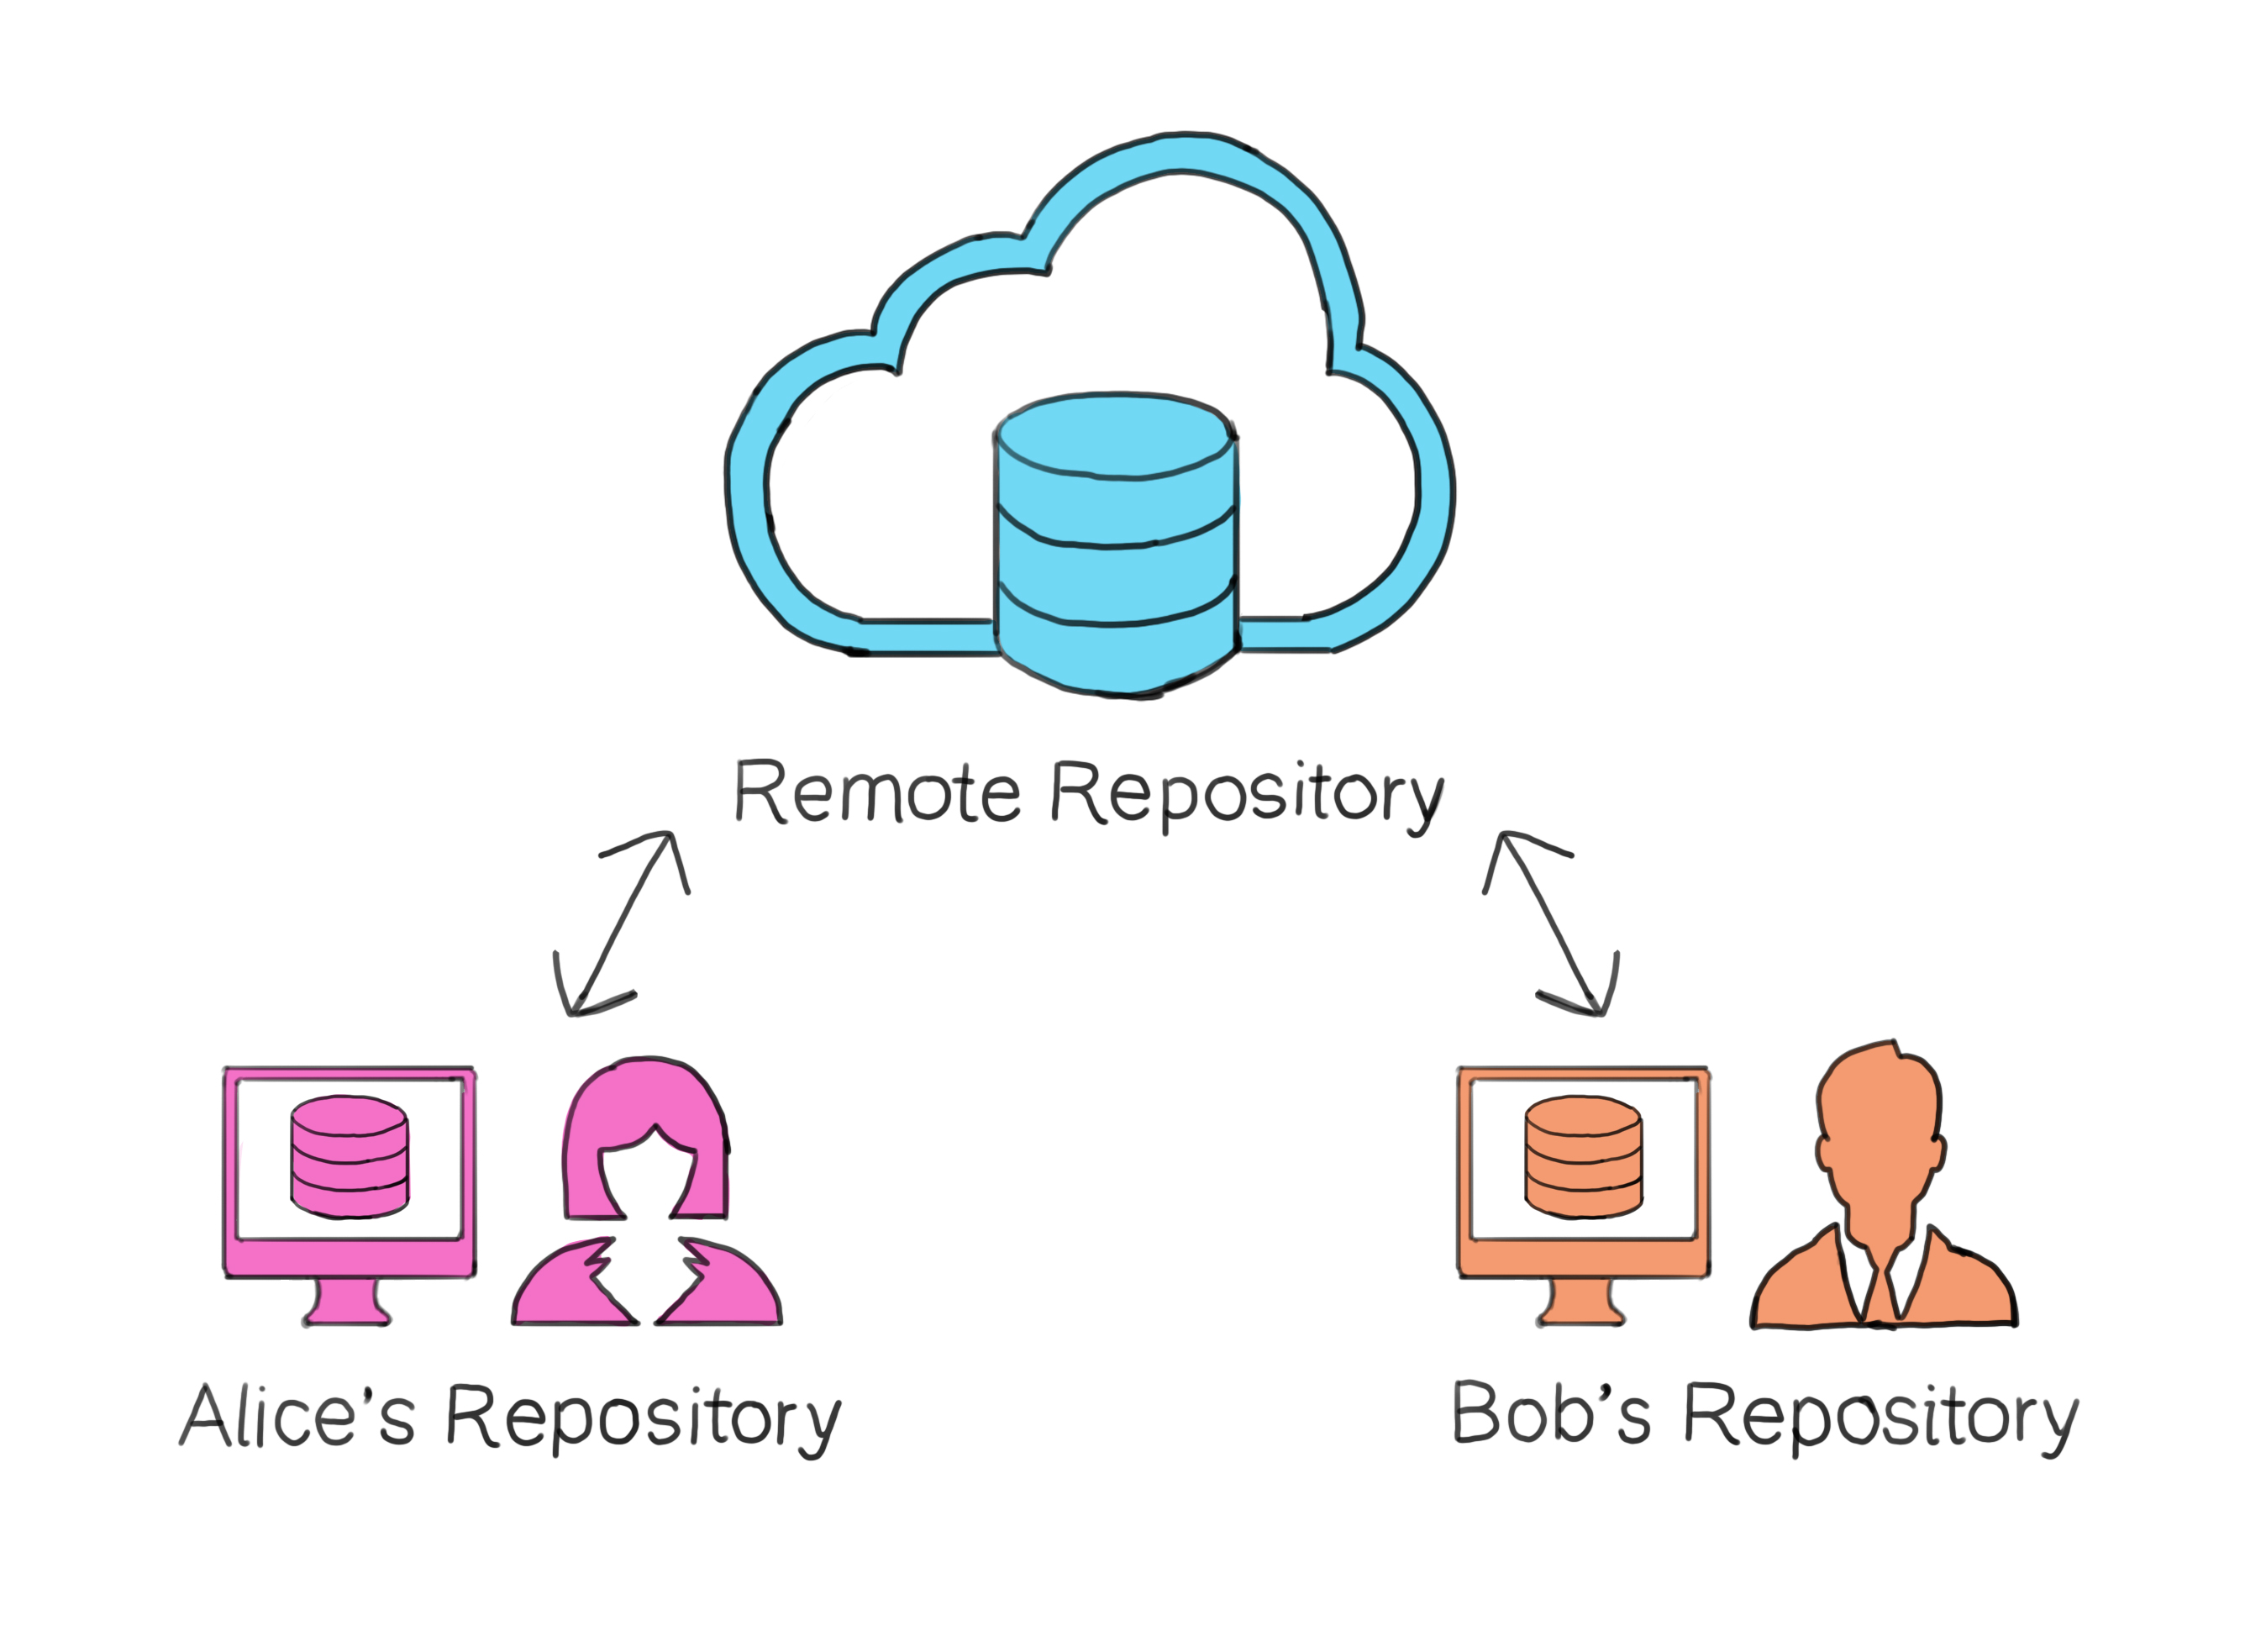 Remote Repository